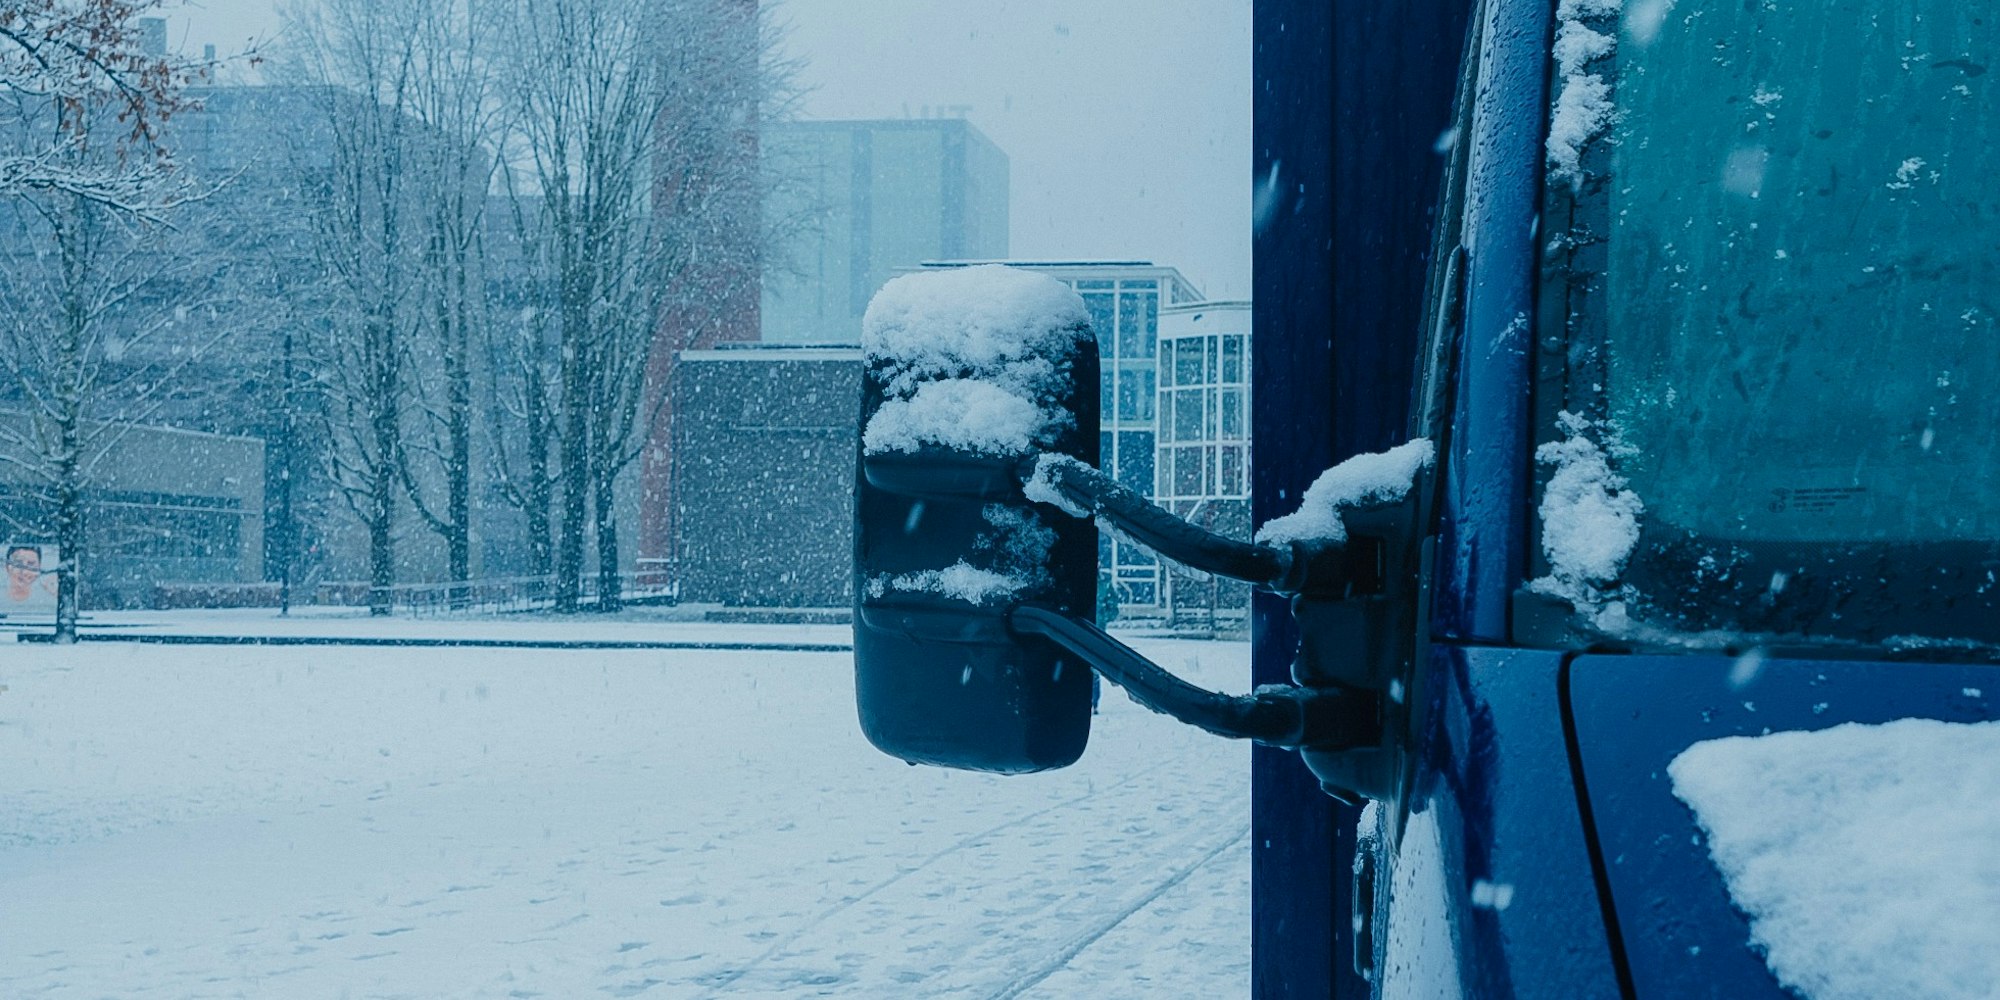 blauwe bus staat in amsterdam, hevige sneeuwval